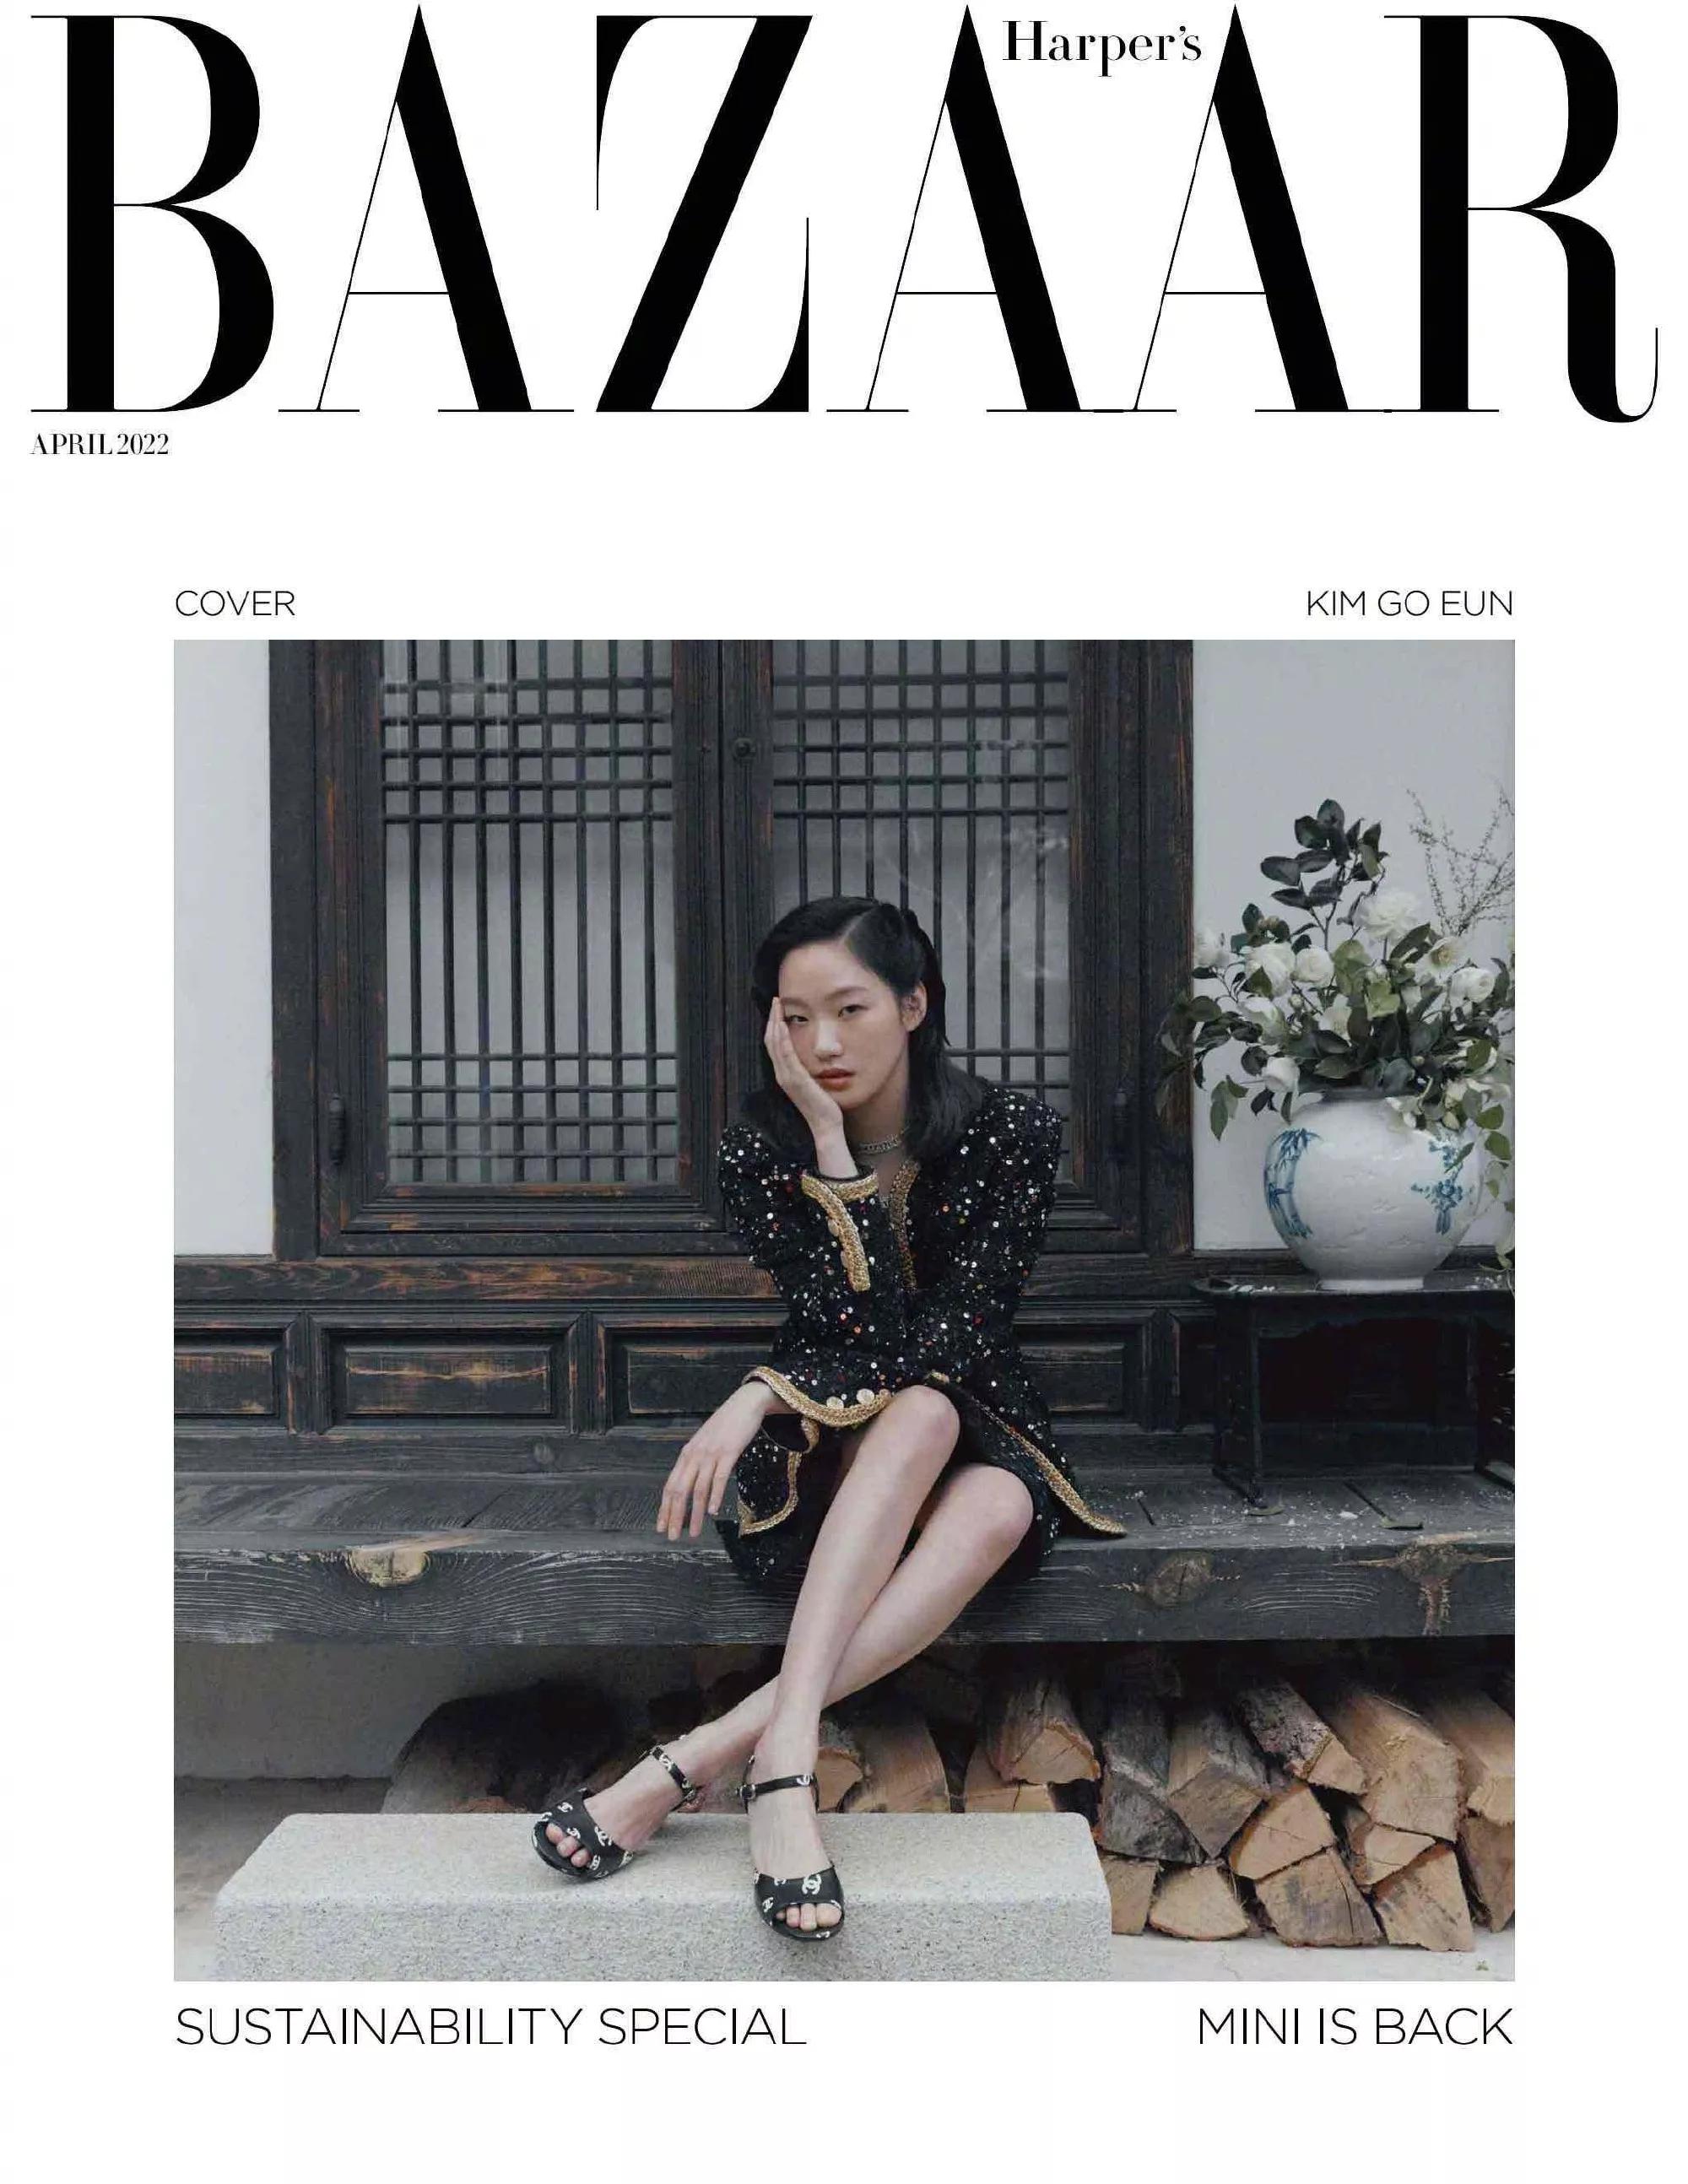 金高银登上韩版时尚芭莎4月刊封面-爱读书